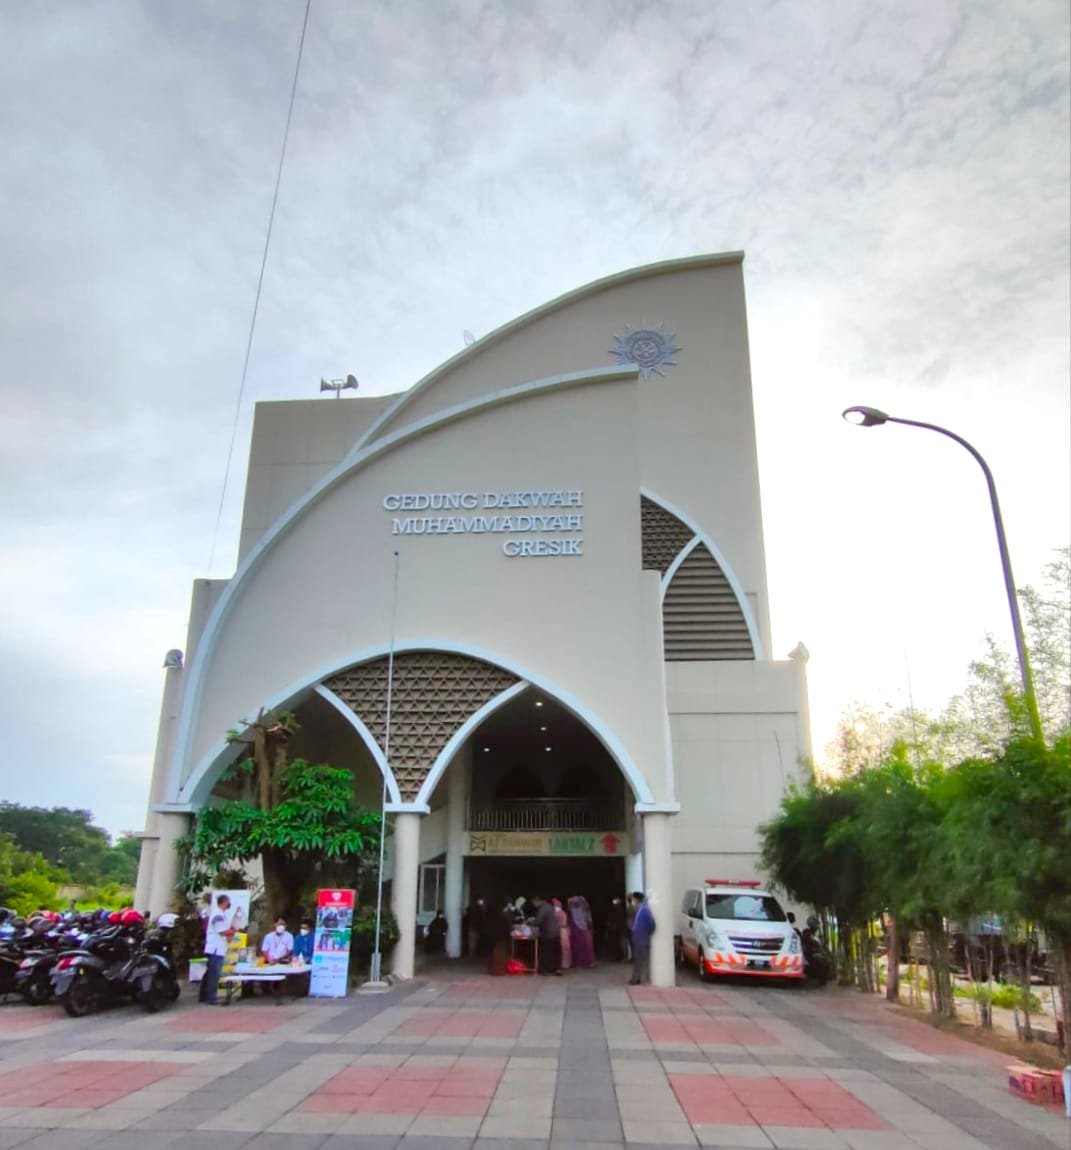 Gedung Dakwah Muhammadiyah Gresik Modern